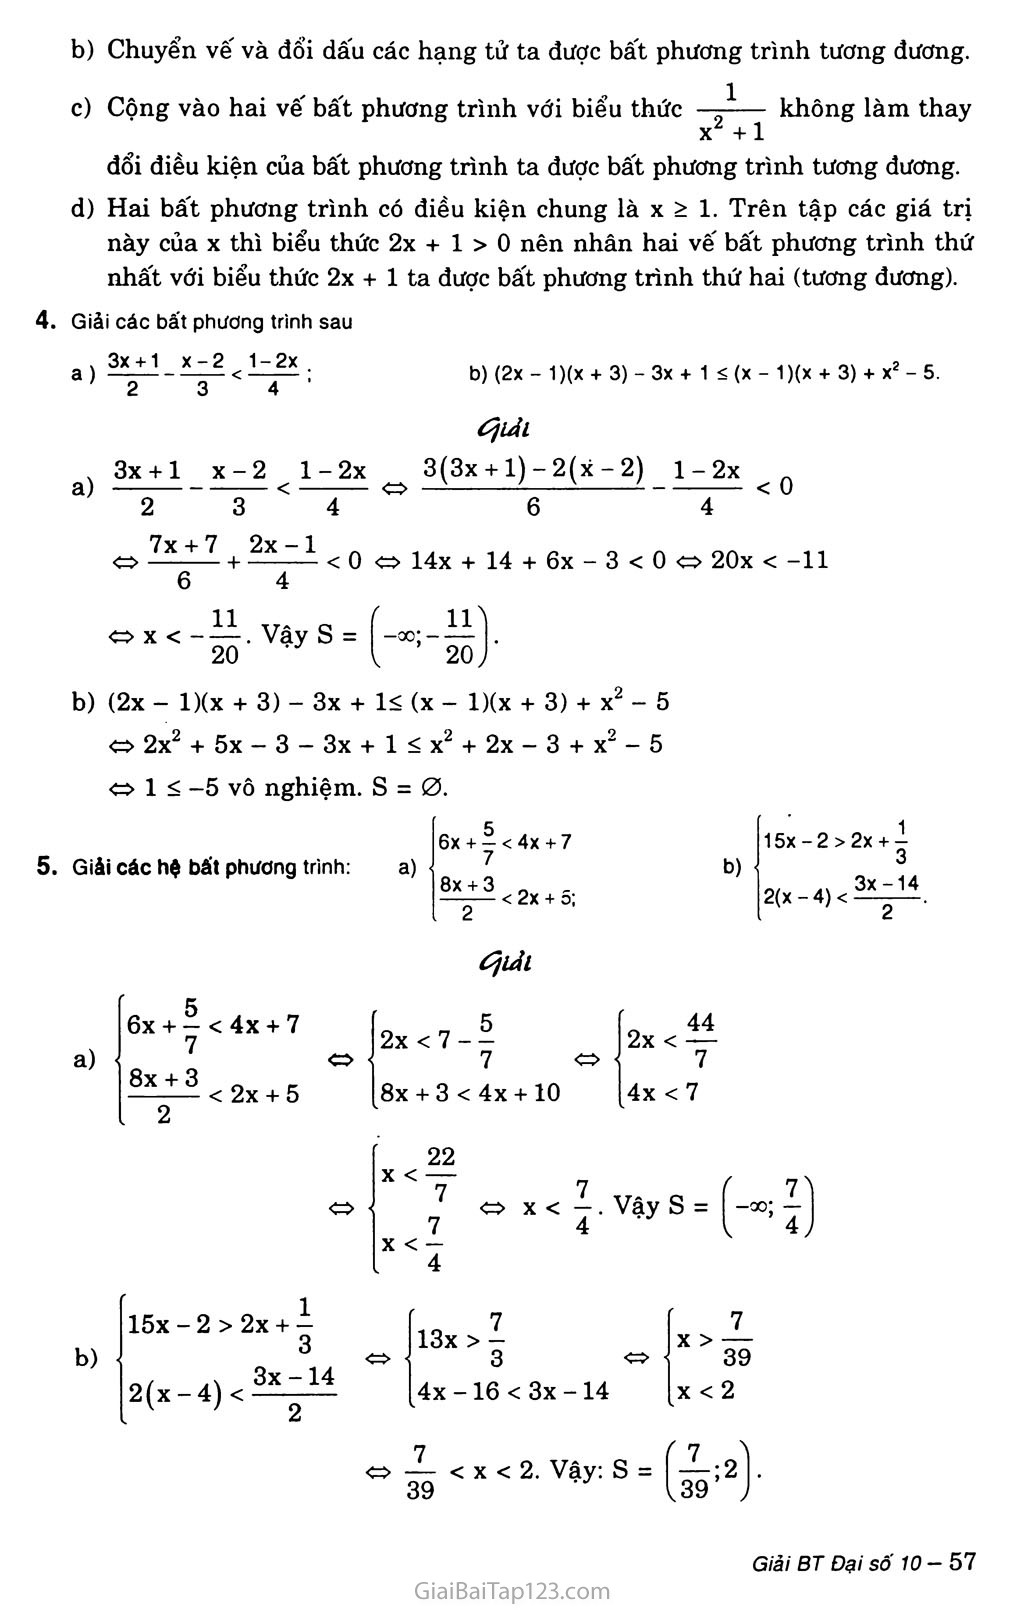 Bài 2. Bất phương trình và hệ bất phương trình một ẩn trang 4